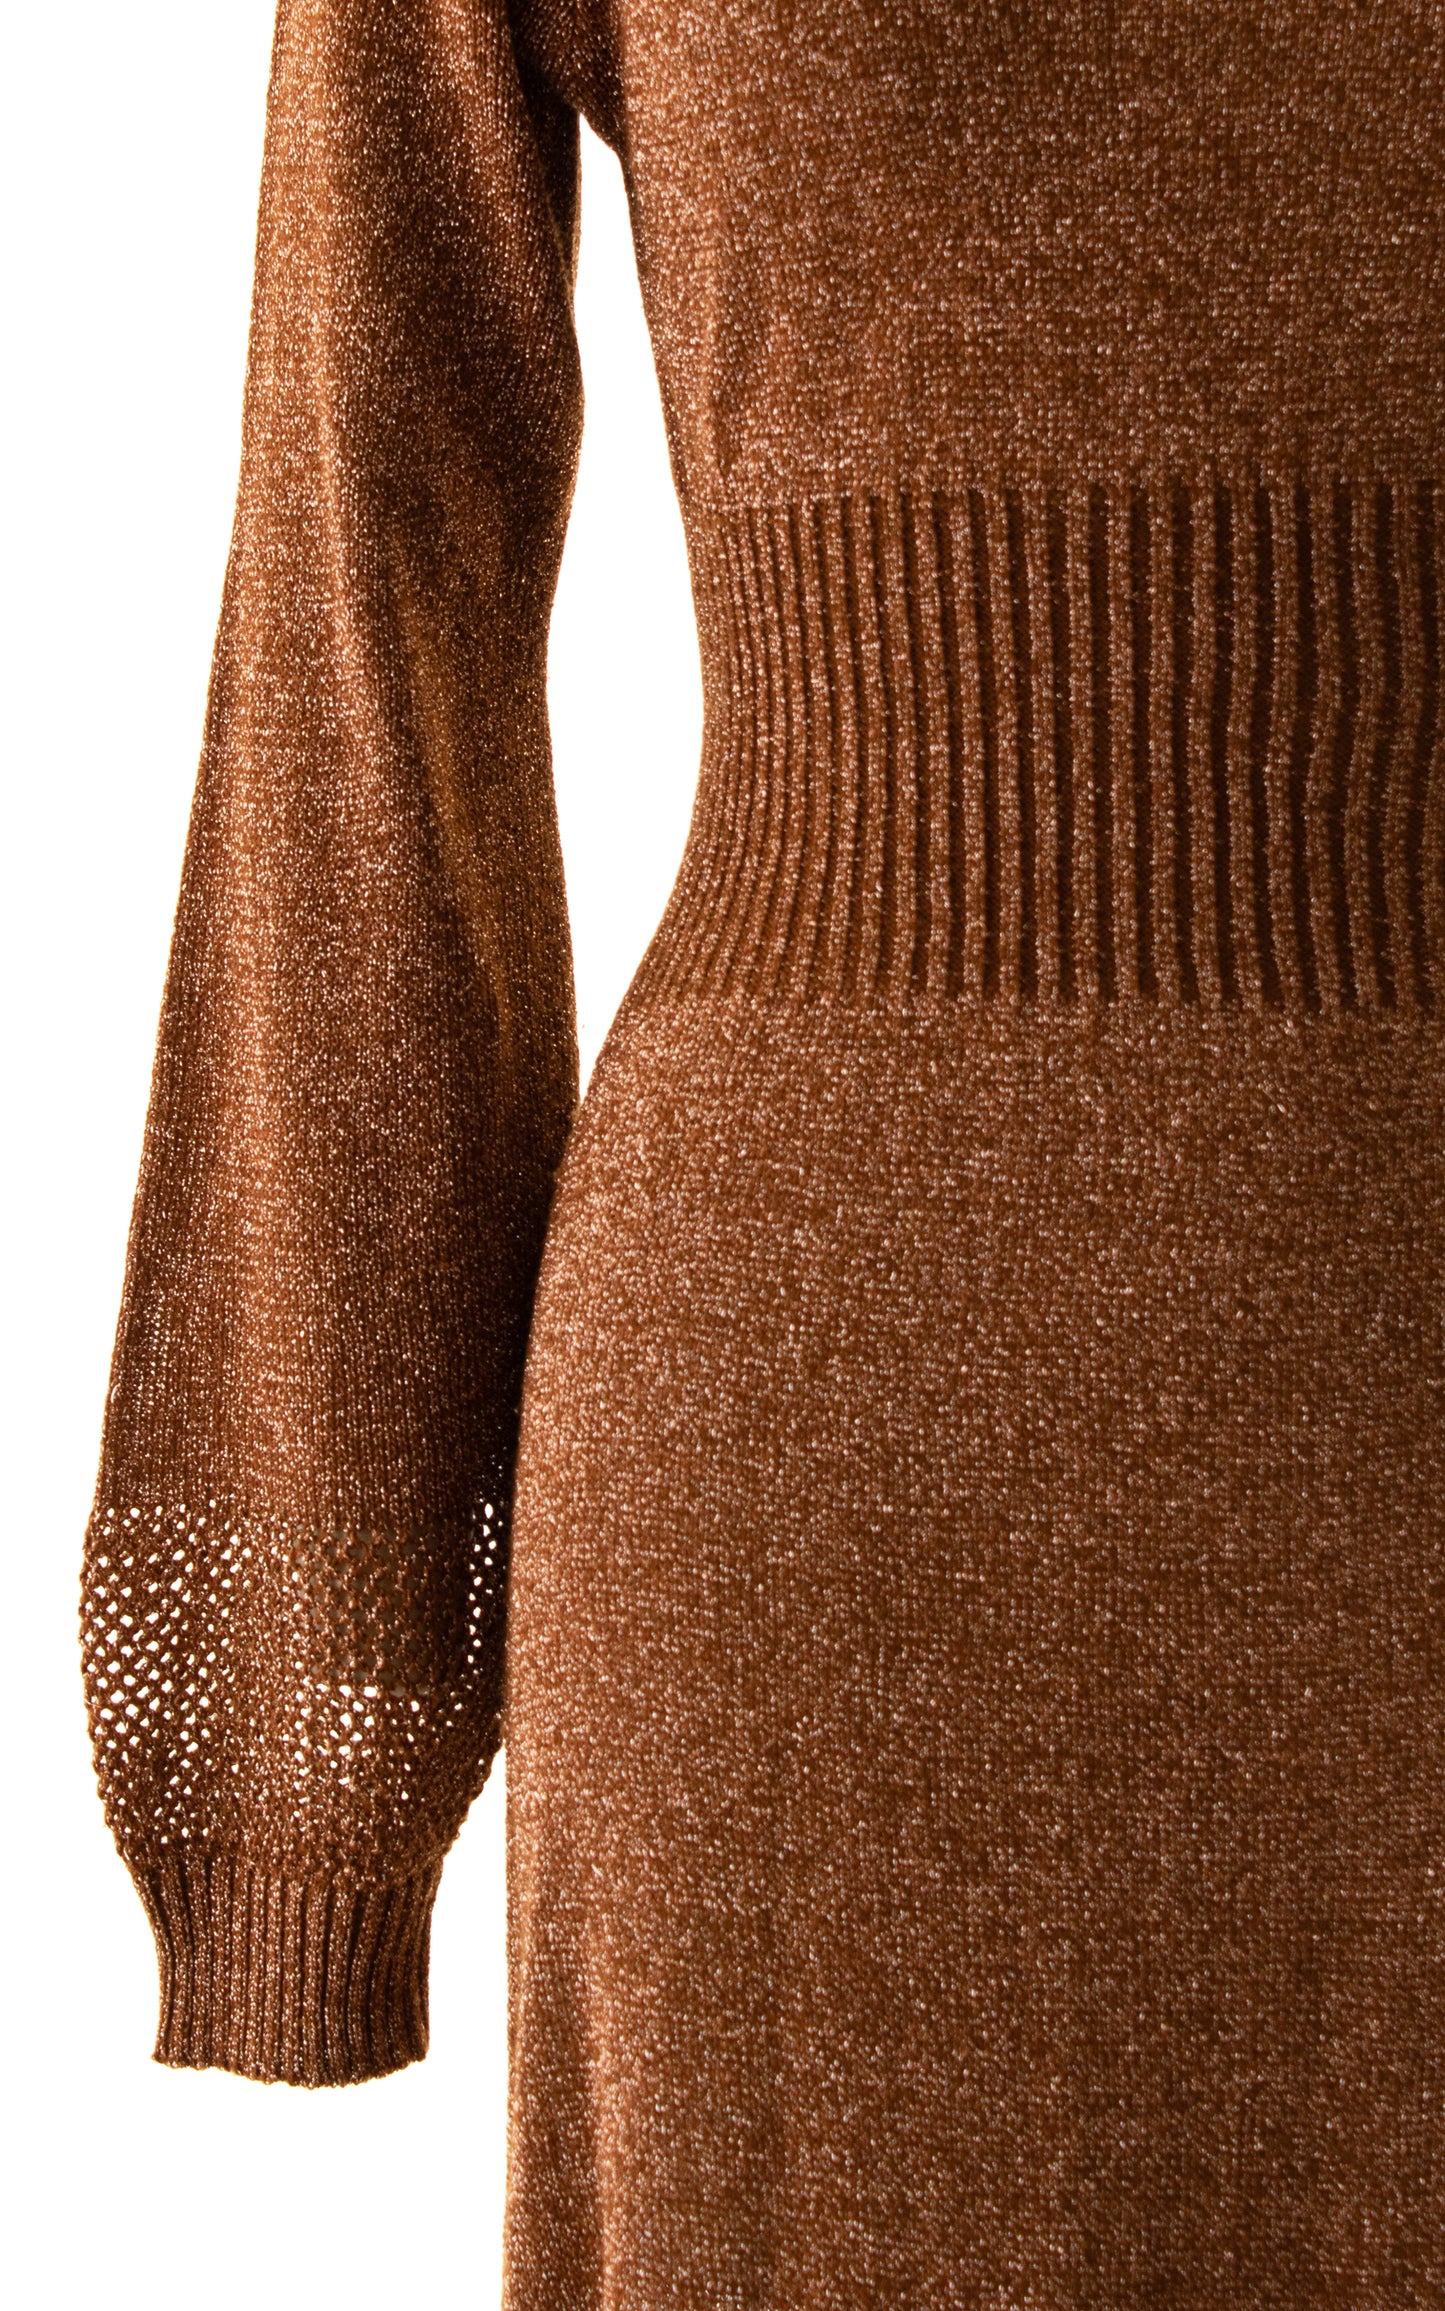 1970s WENJILLI Metallic Copper Sweater Dress | x-small/small/medium